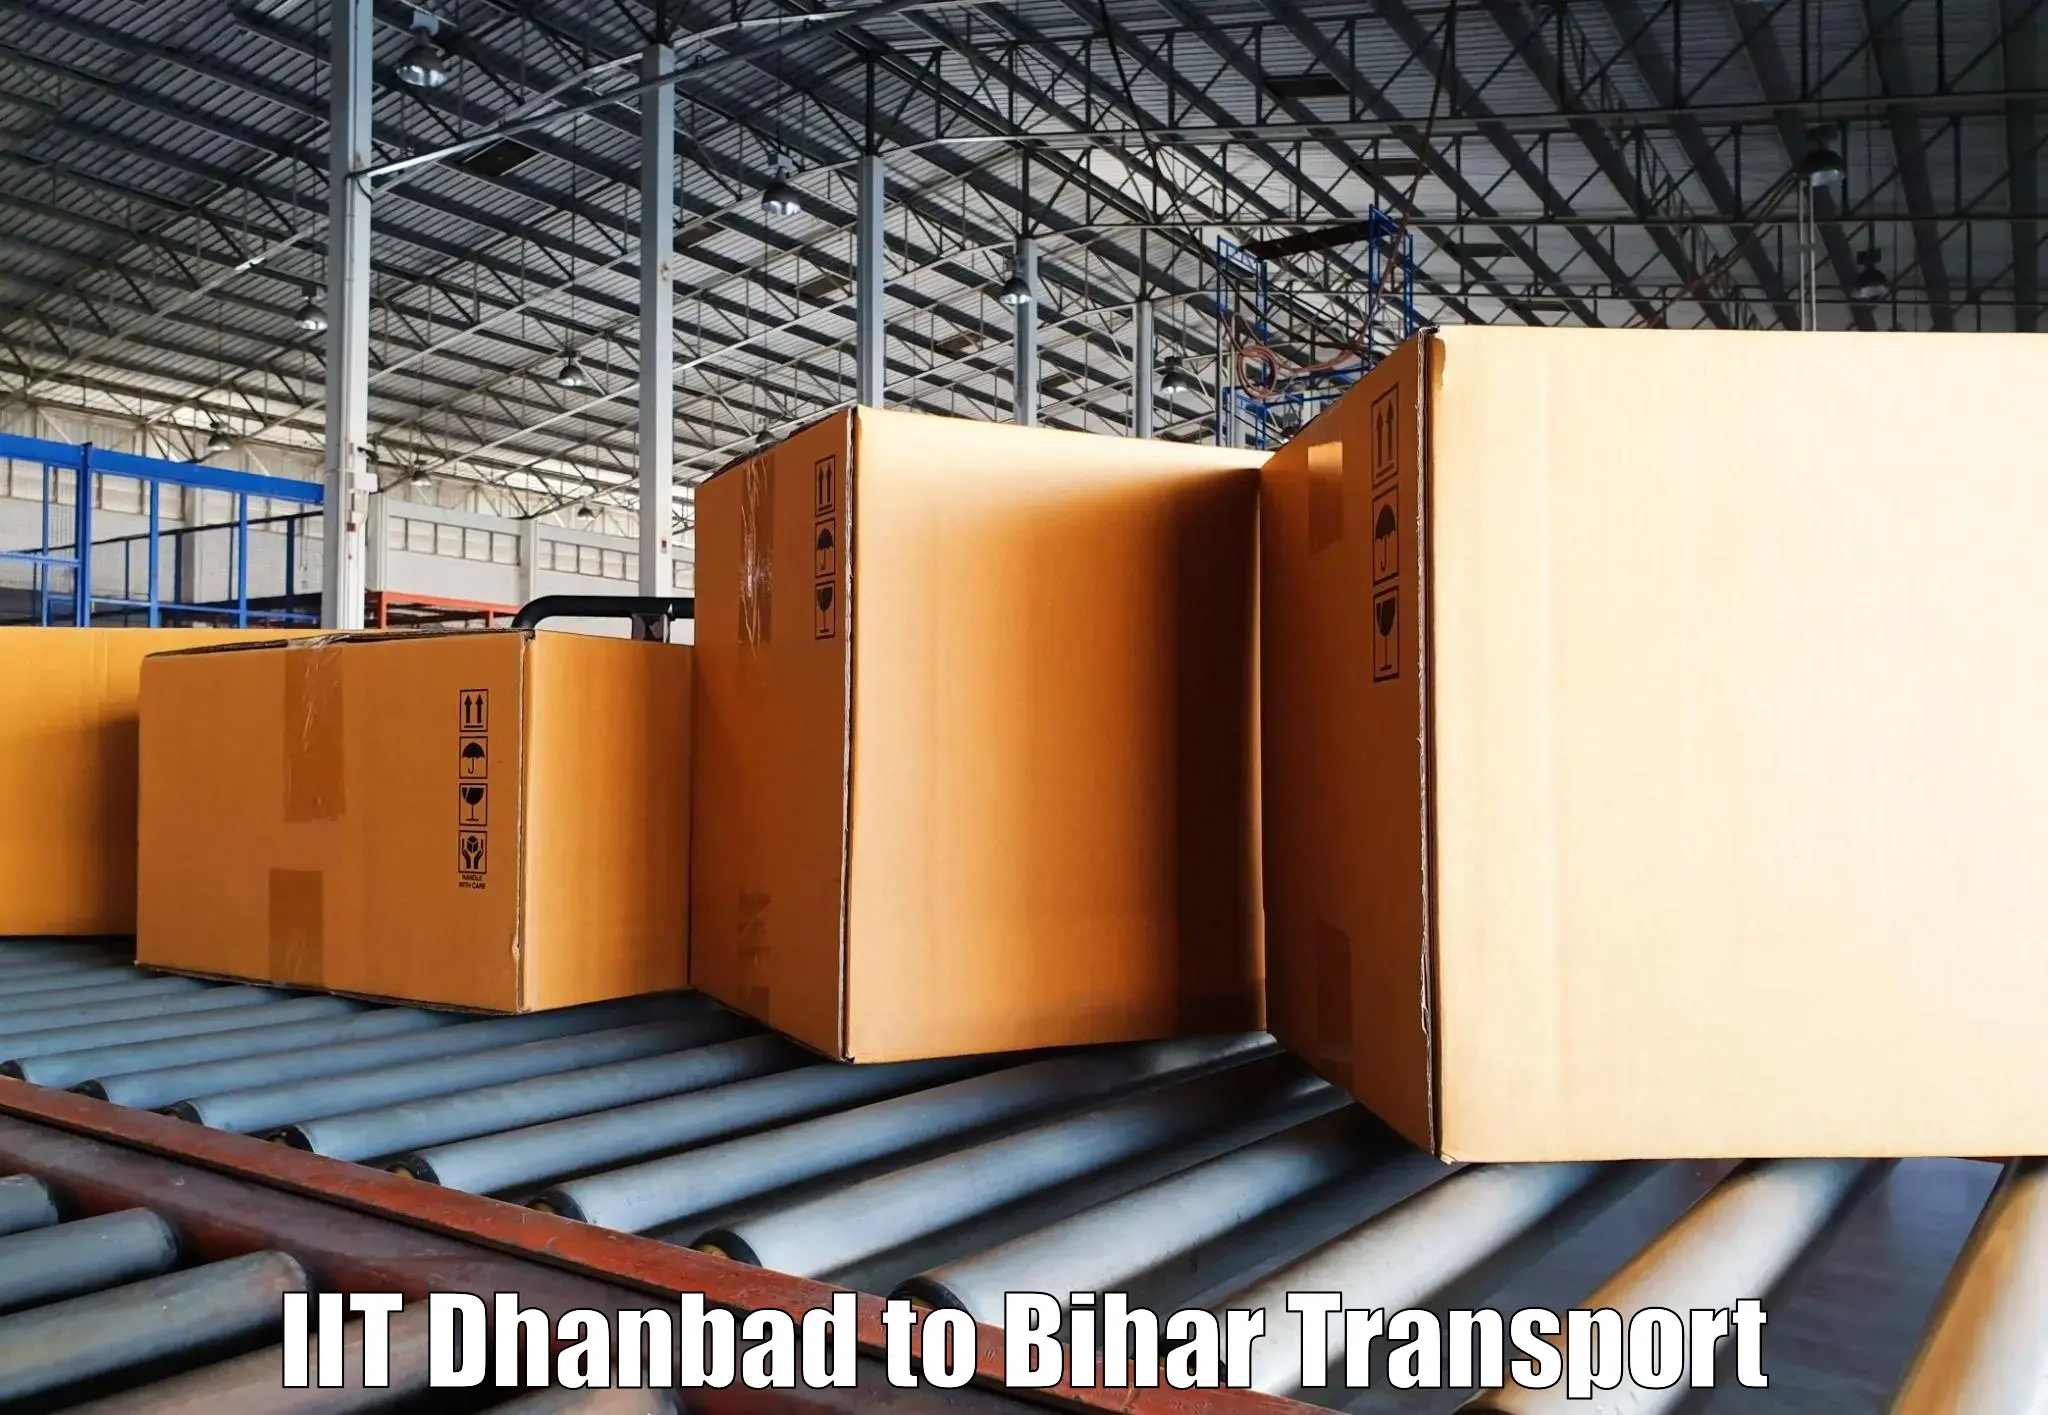 Nearest transport service IIT Dhanbad to Bhagalpur